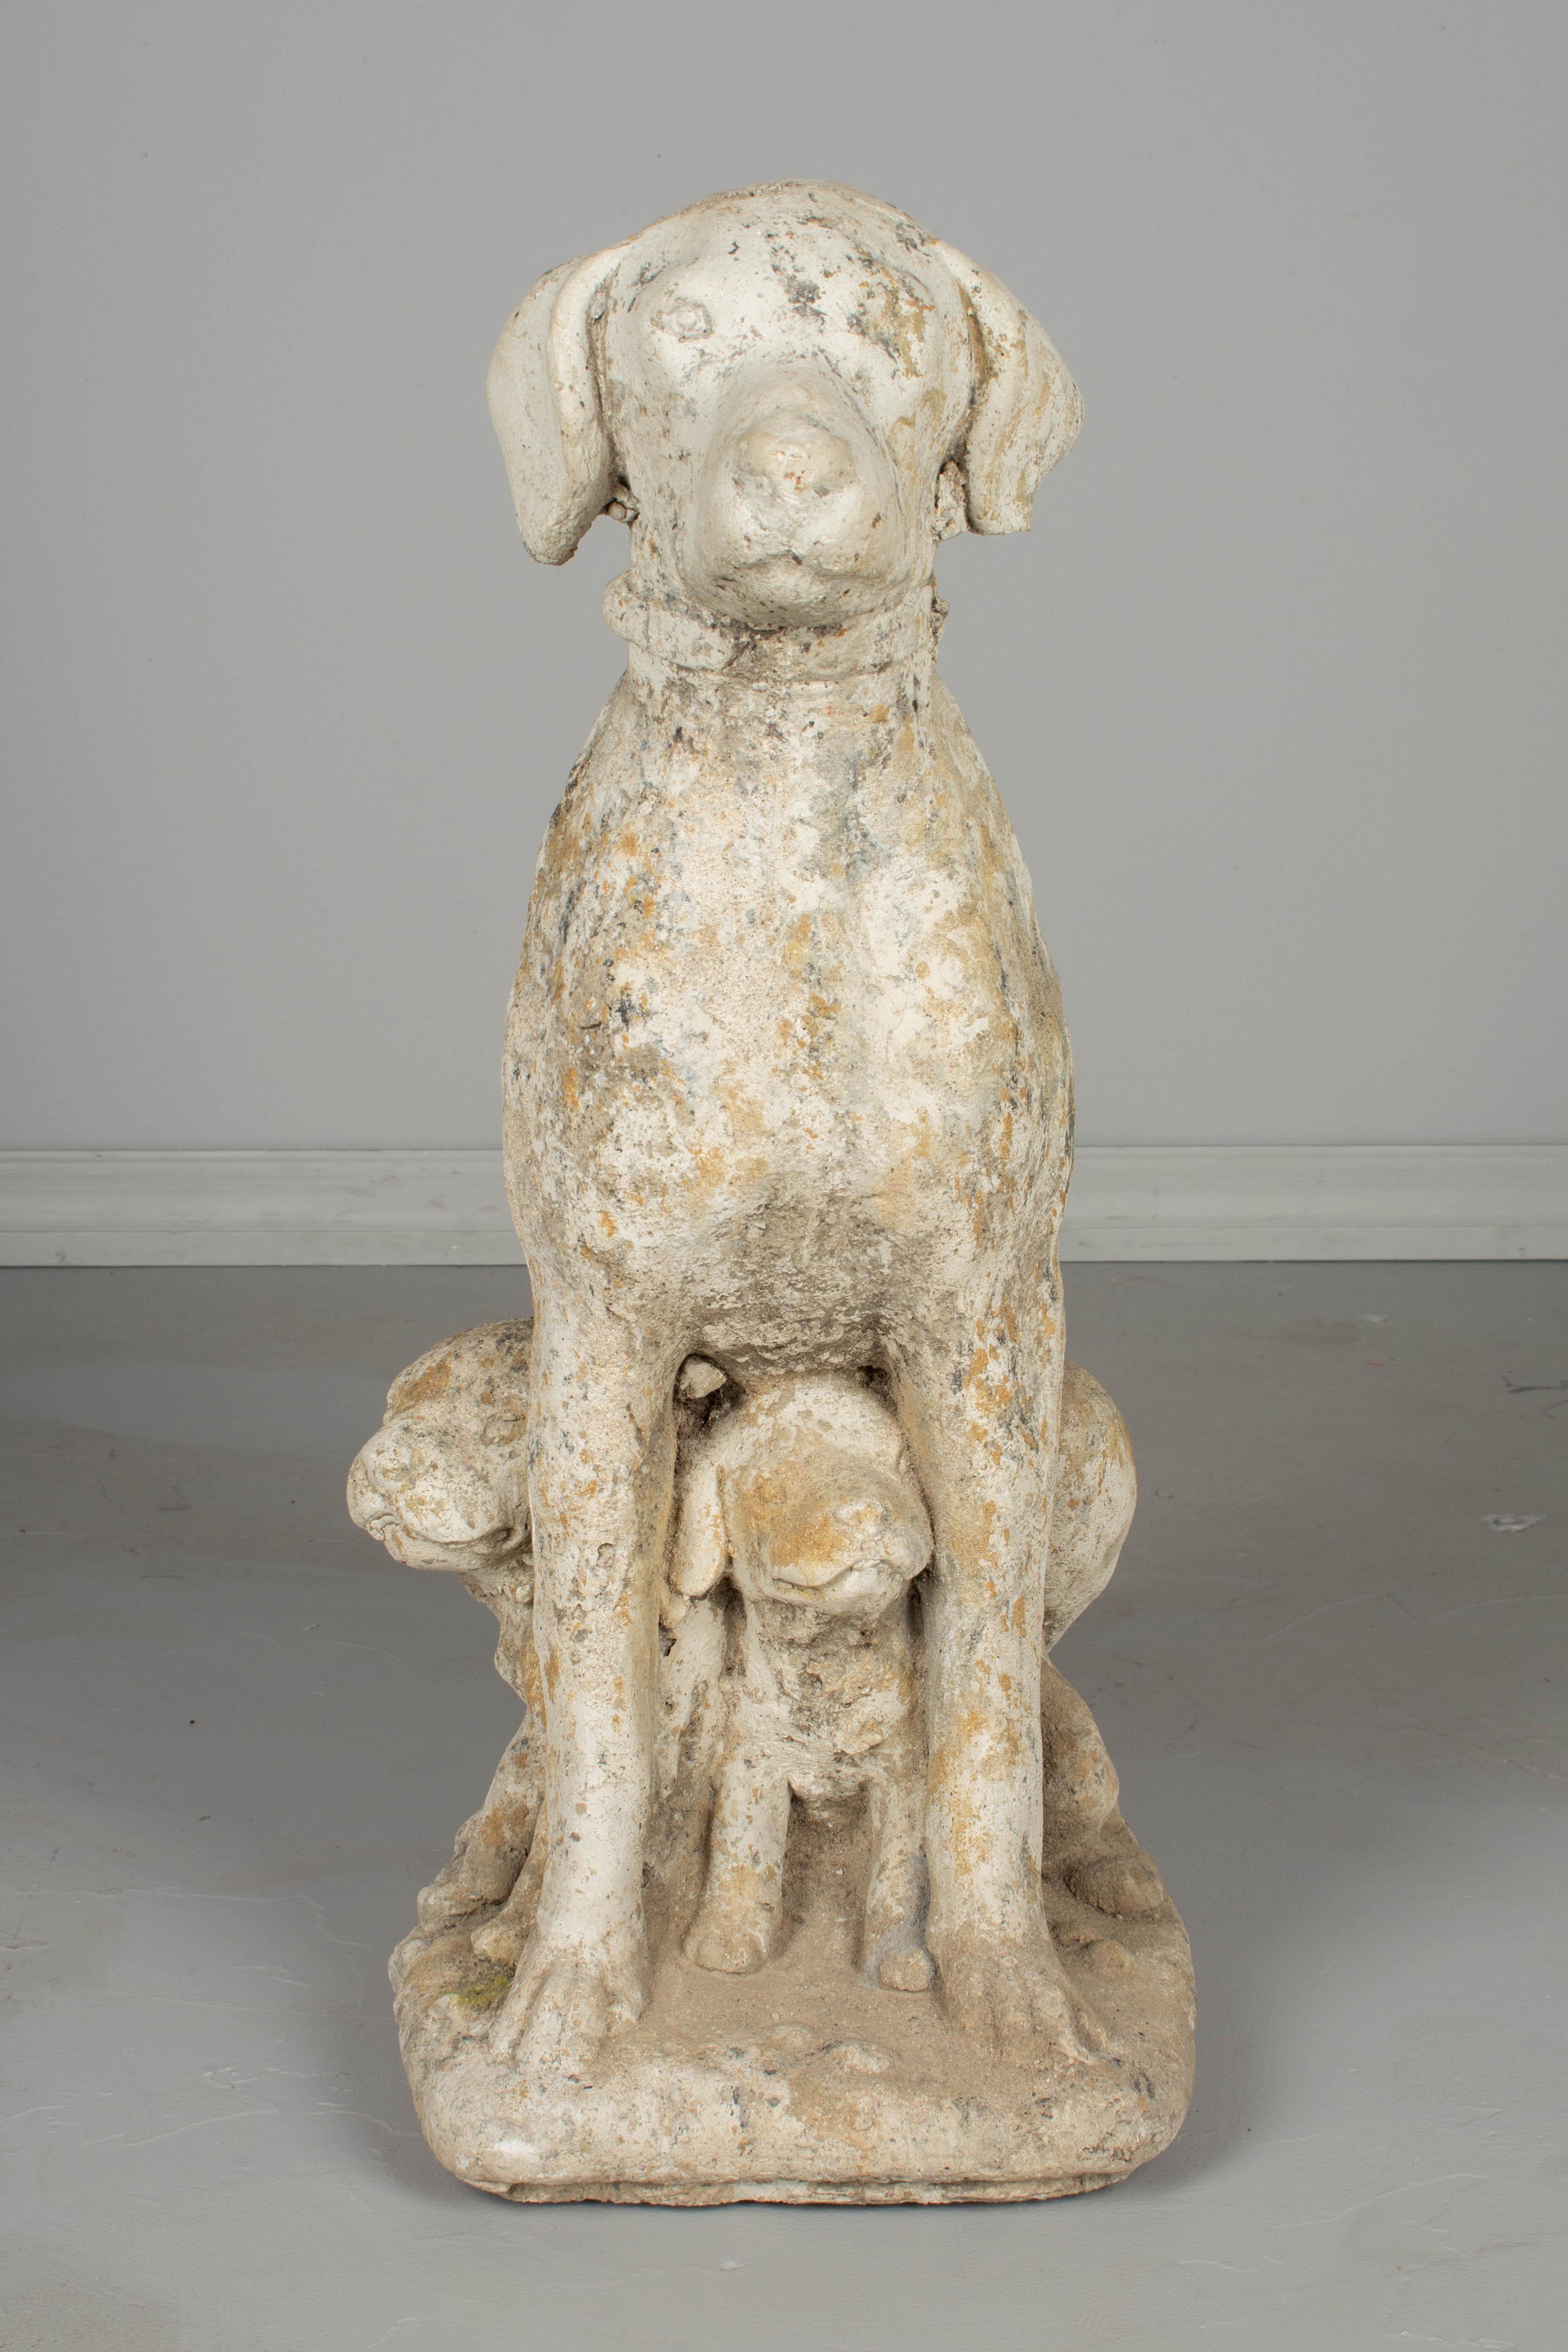 concrete poodle dog statues